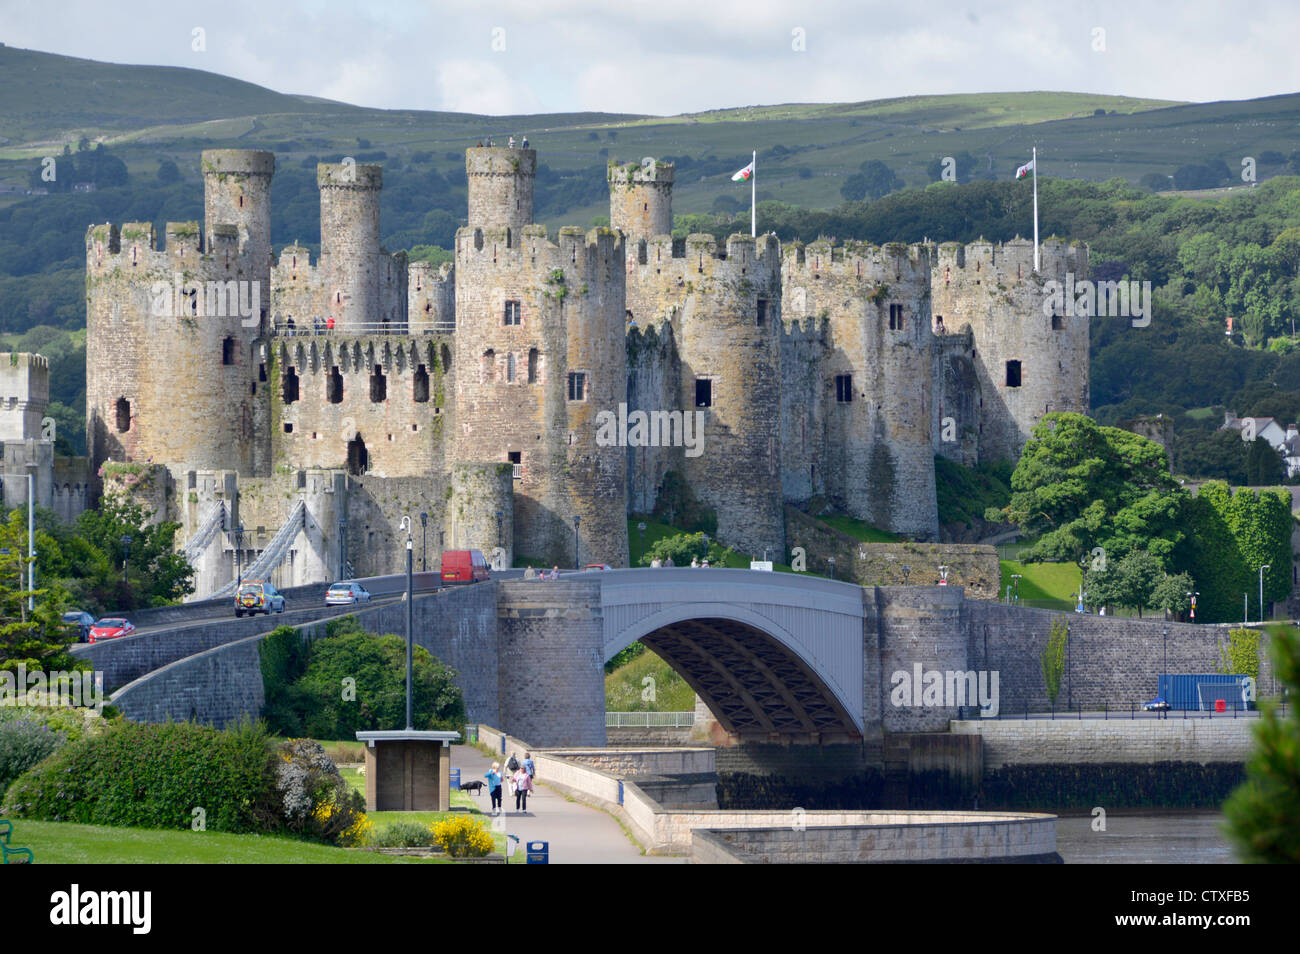 Site du patrimoine mondial de l'UNESCO classé Grade I Bâtiment historique médiéval tours en pierre du château de Conwy et pont routier moderne sur la rivière Conwy Nord du pays de Galles Banque D'Images